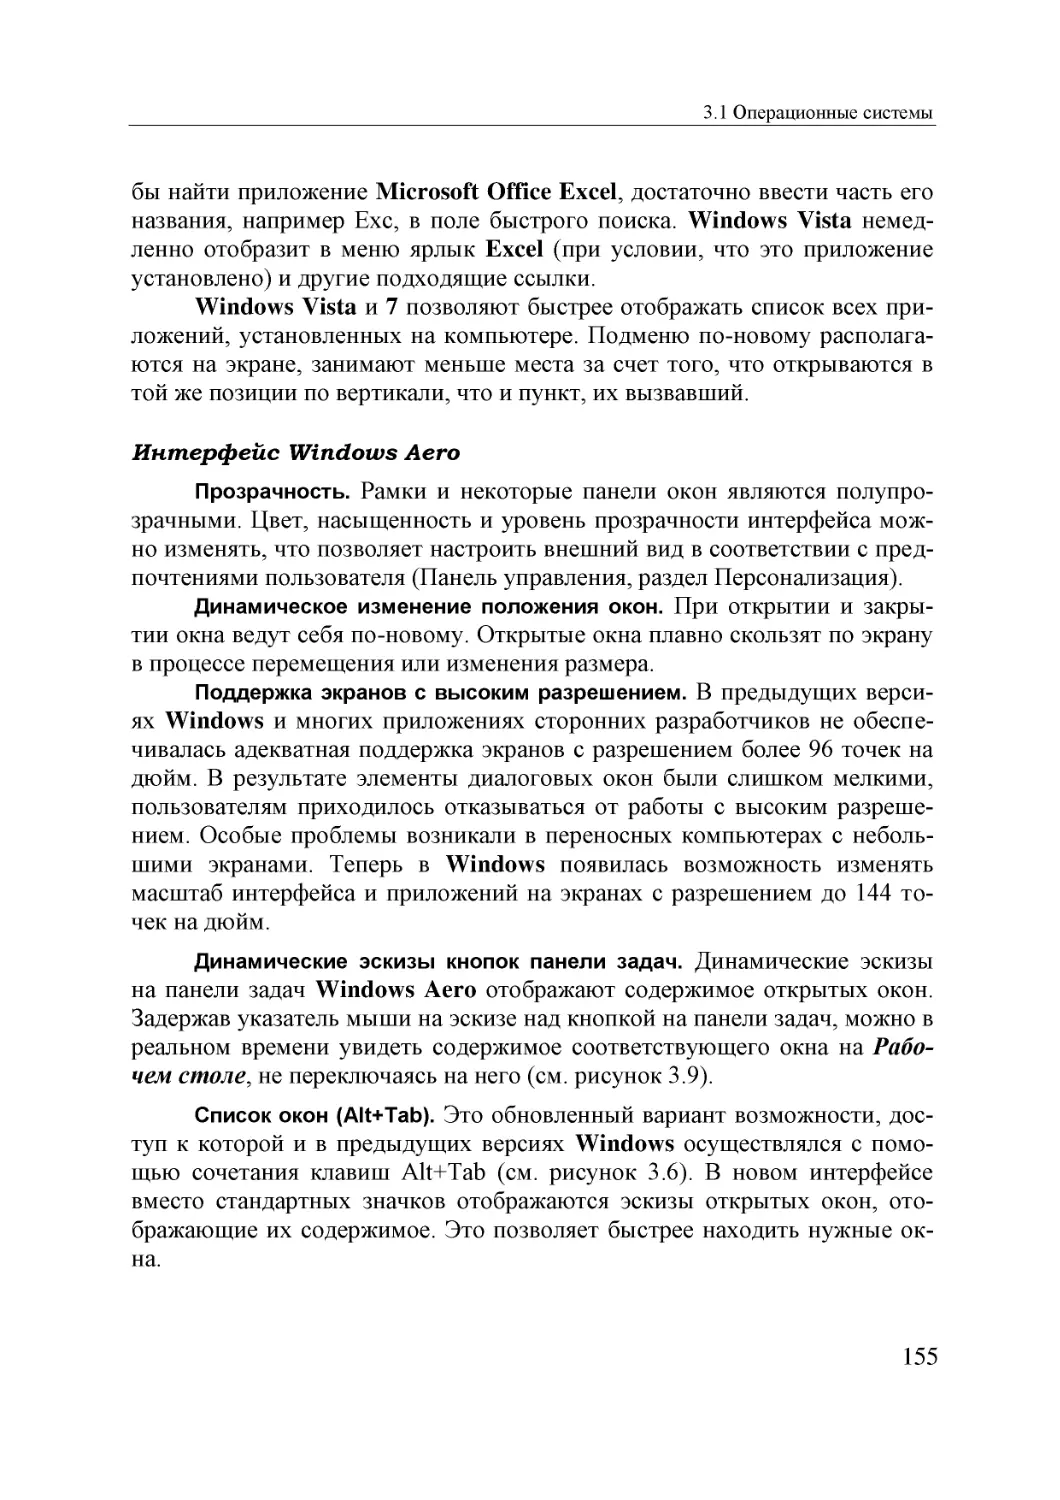 Informatika_Uchebnik_dlya_vuzov_2010 155